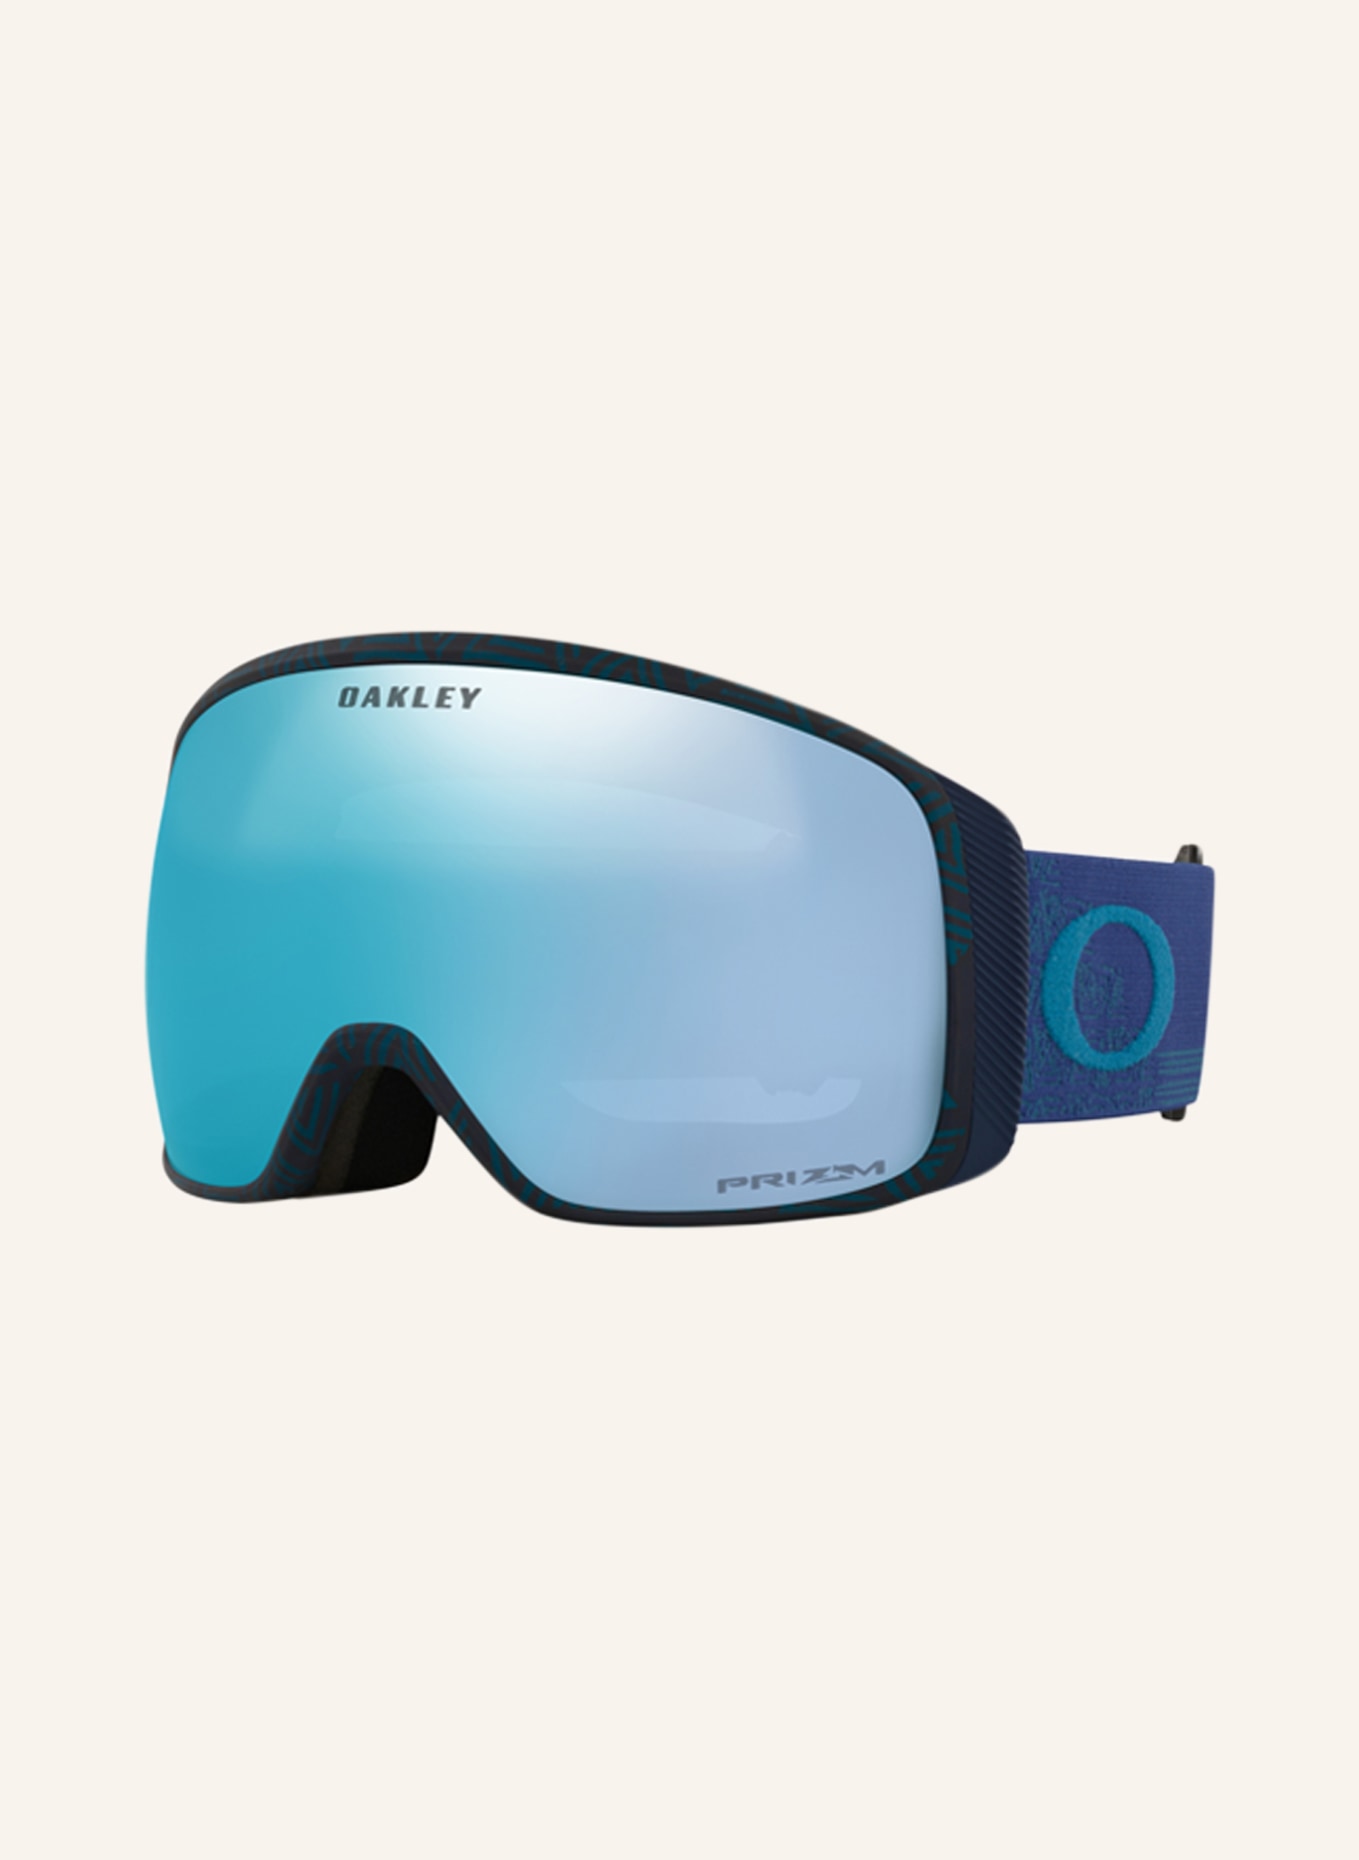 OAKLEY Ski goggles FLIGHT TRACKER, Color: DARK BLUE (Image 1)